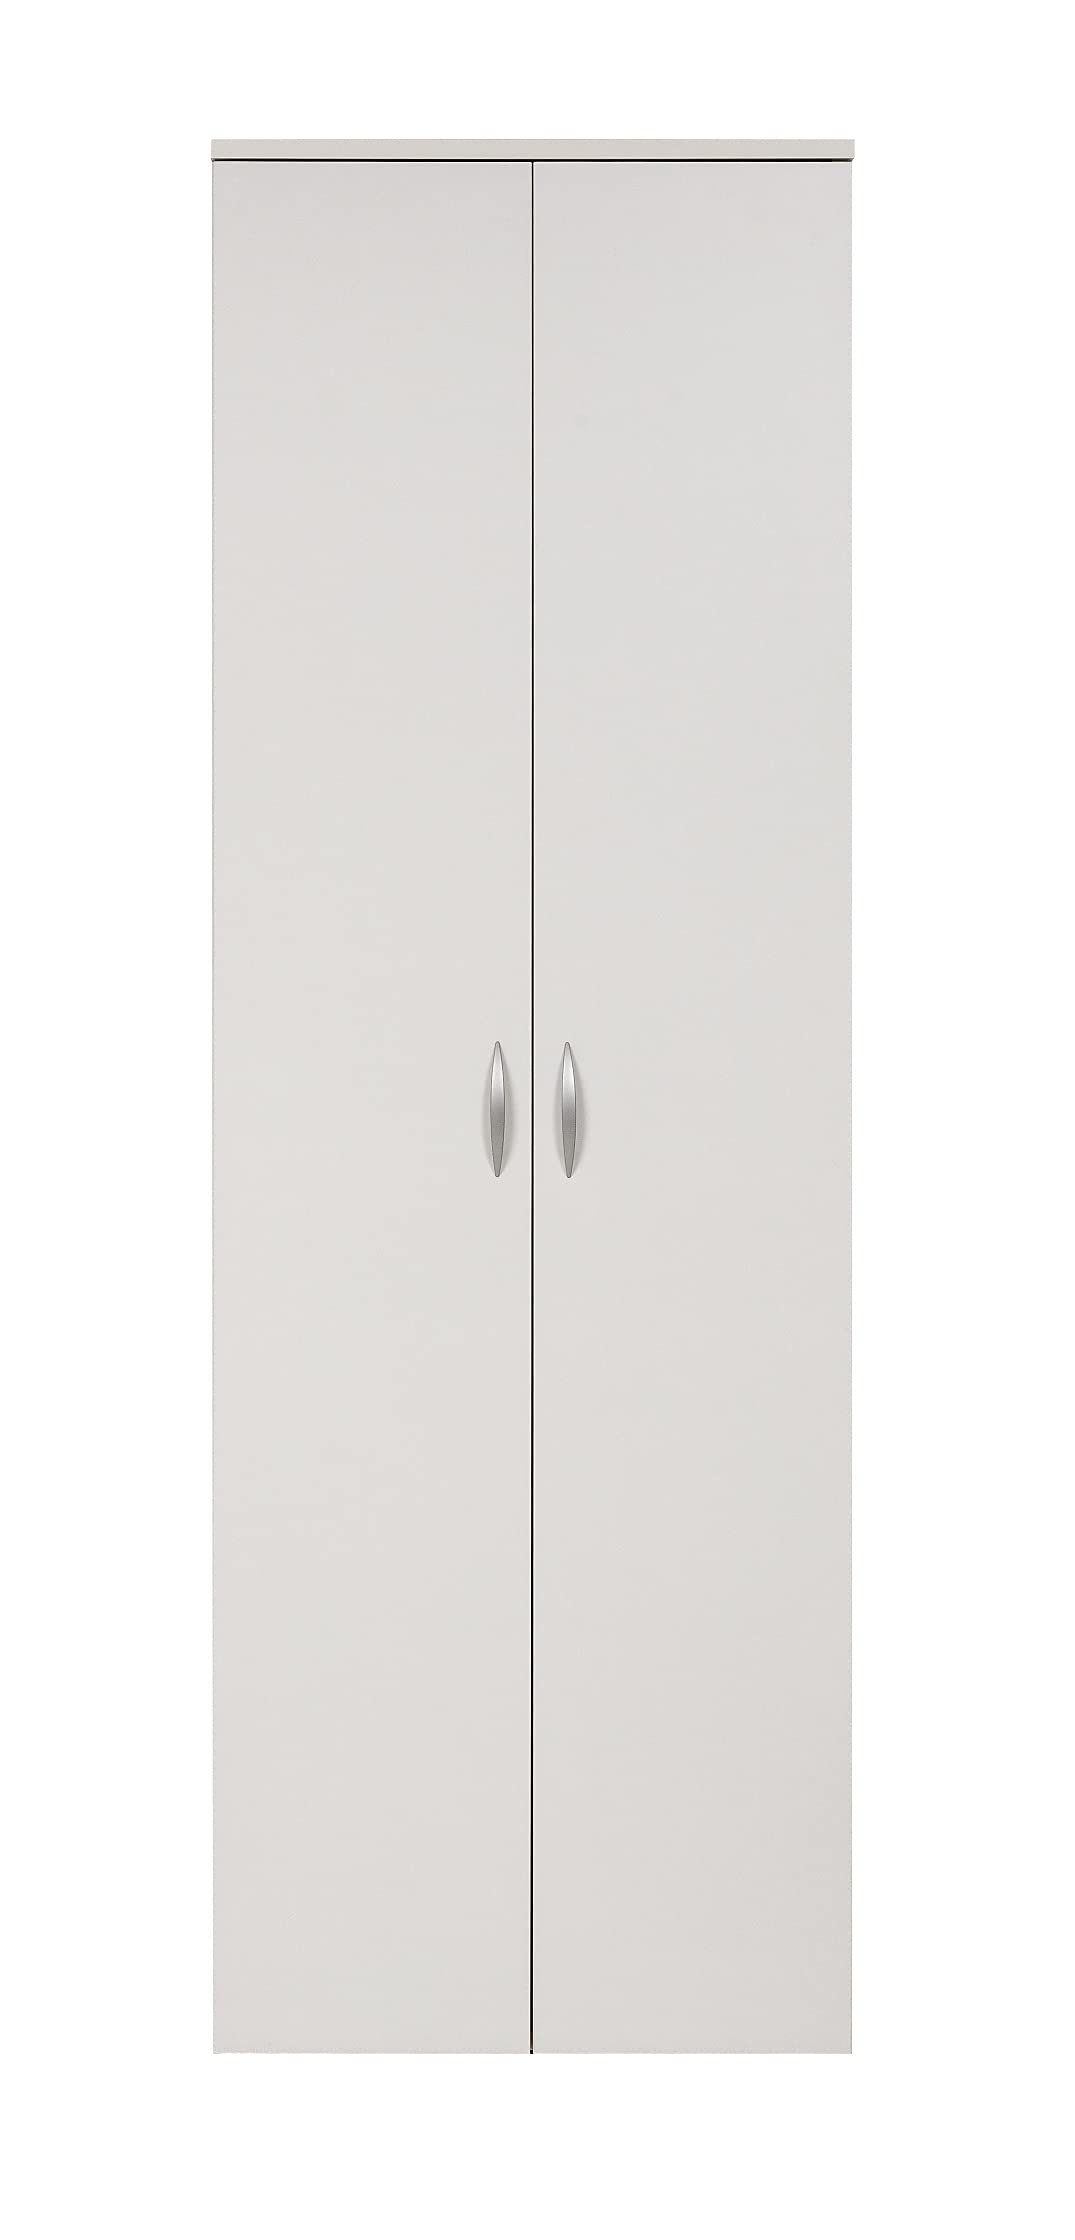 Furni24 60x180x34 cm weiß, Kleiderschrank Kleiderschrank,